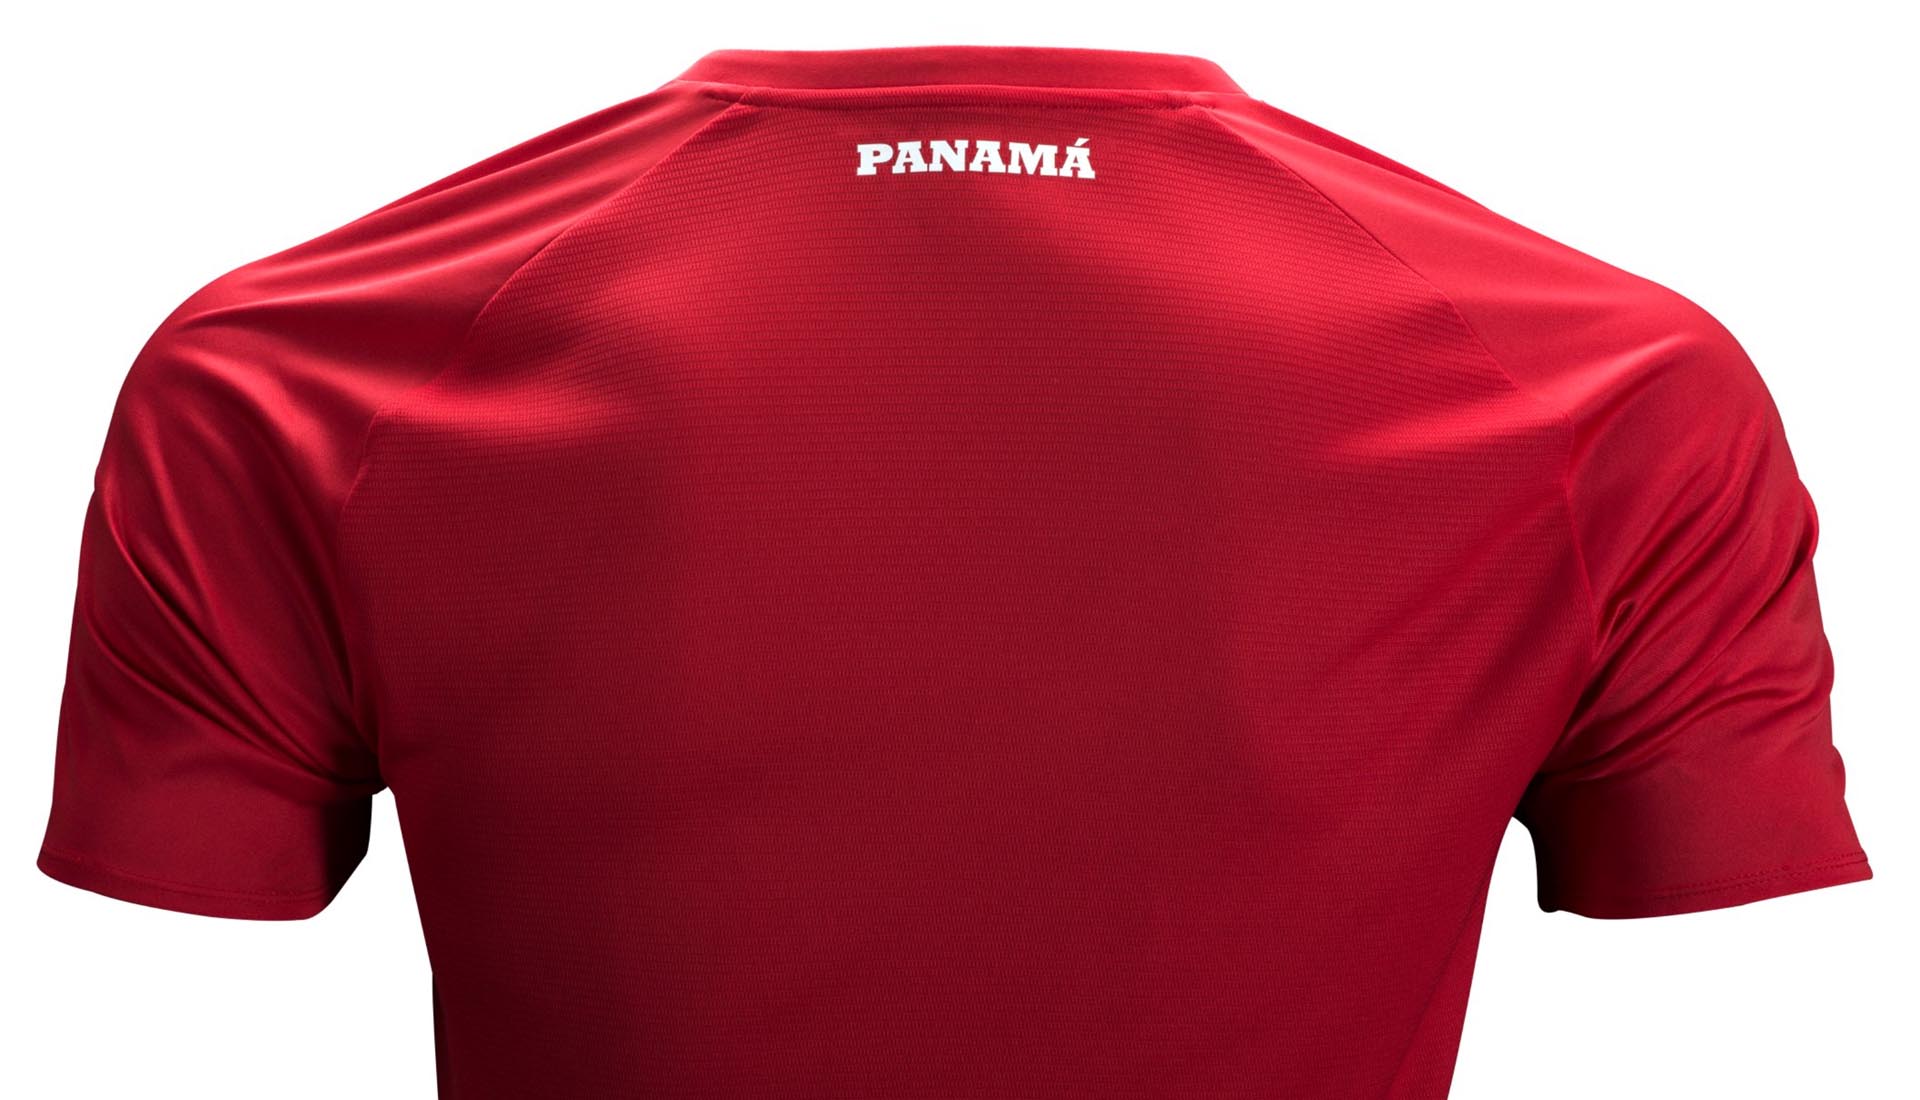 new balance panama t shirt